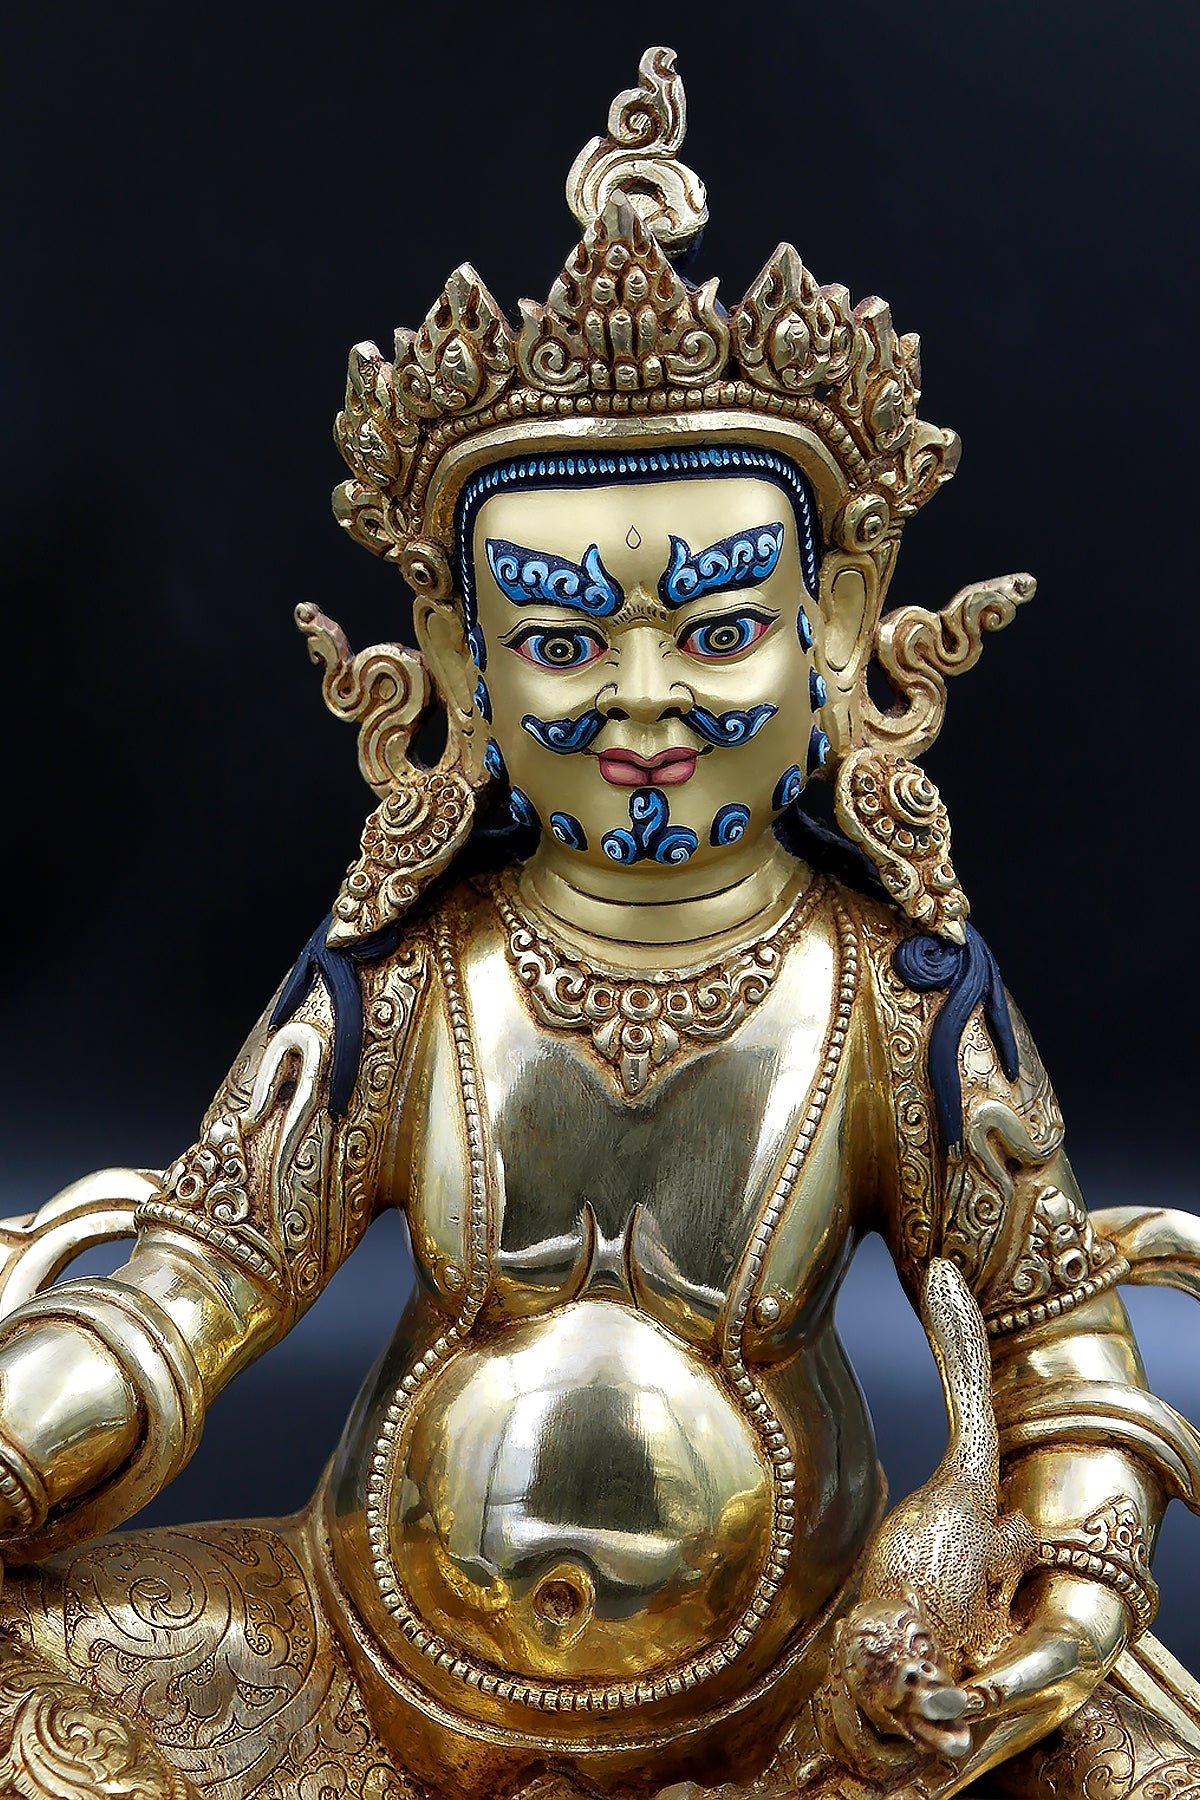 Gold Plated Zambala Statue from Patan 10.5"